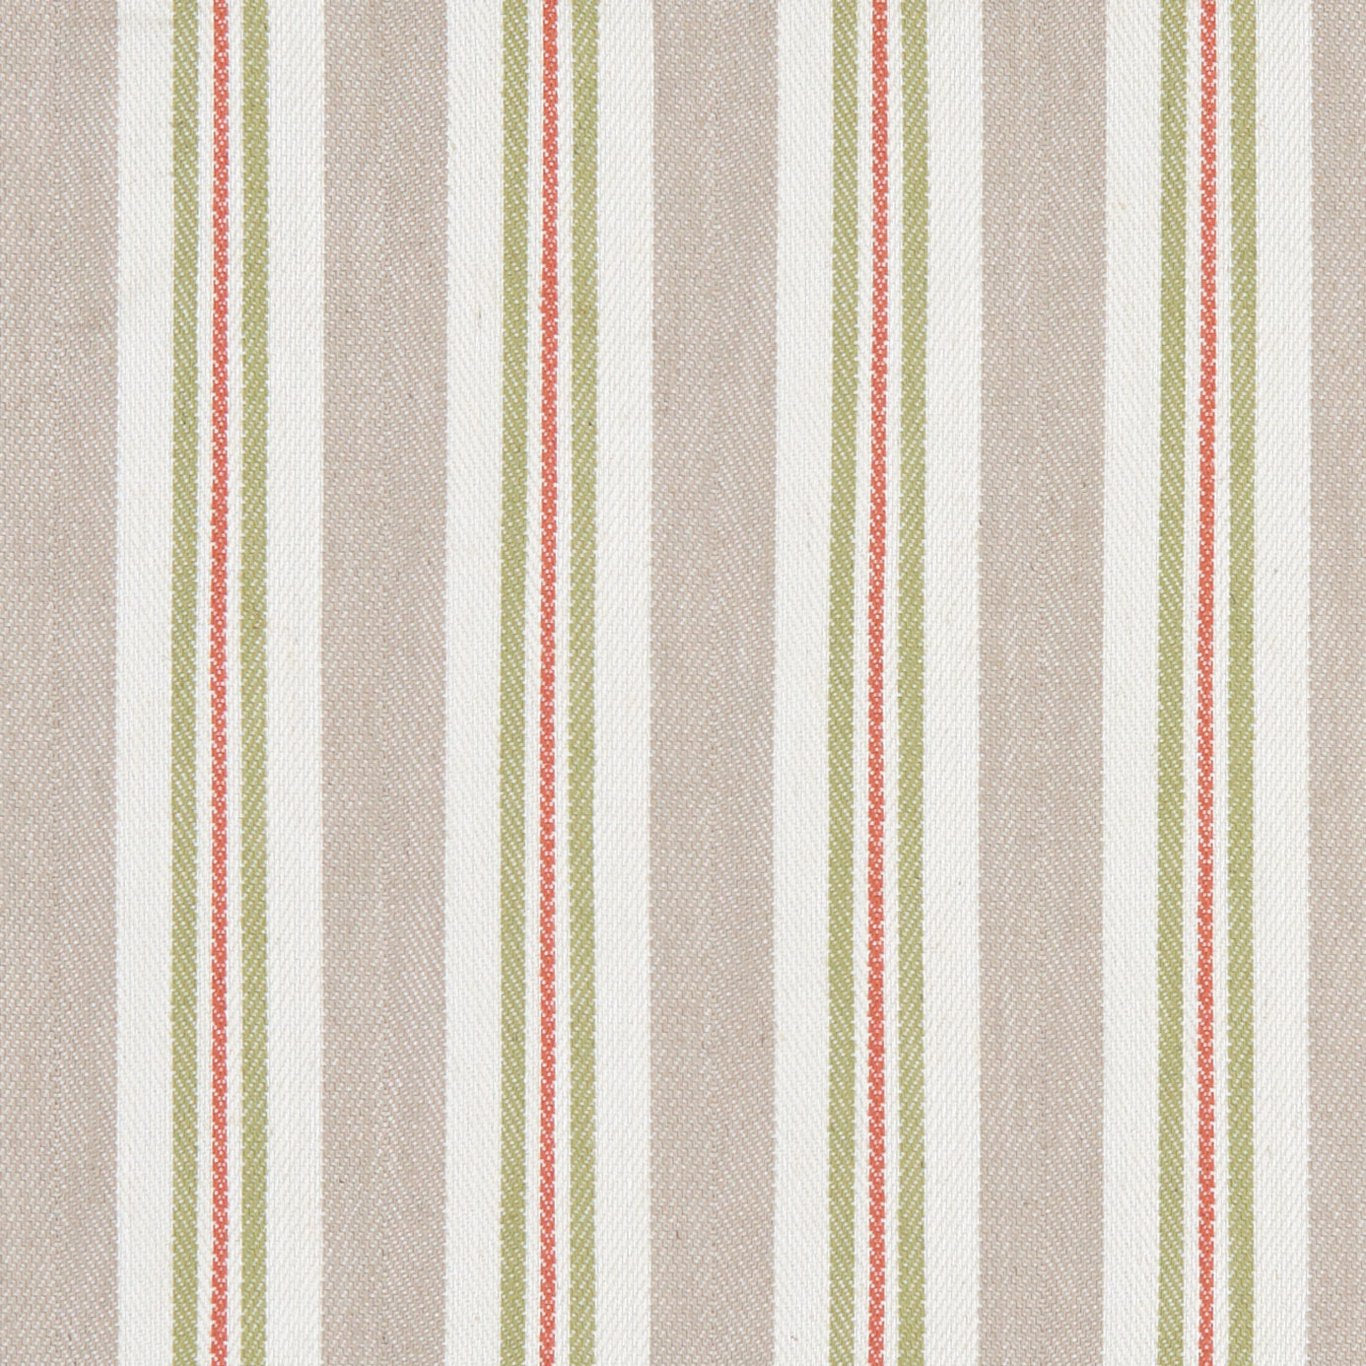 Alderton Fabric by Clarke & Clarke - F1119/06 - Spice/Linen